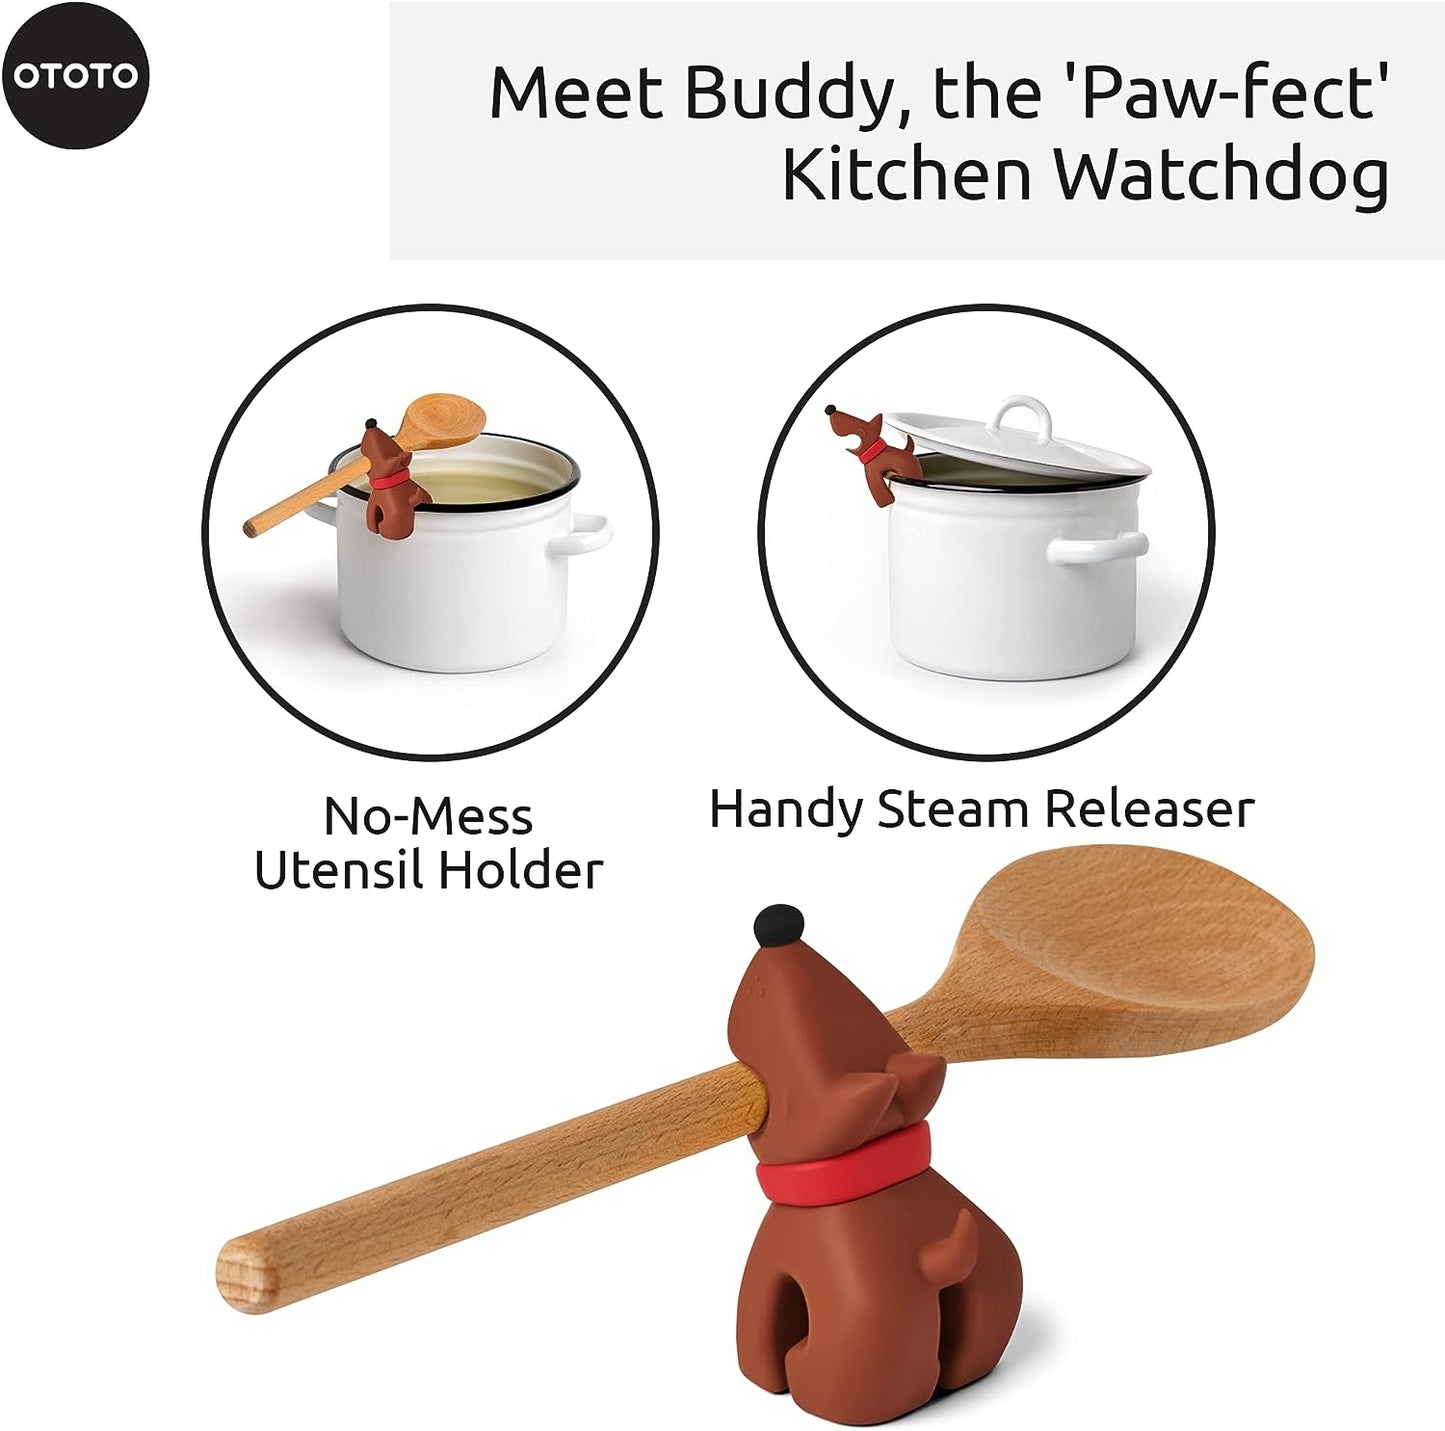 Buddy Spoon Holder & Steam Releaser - Brown